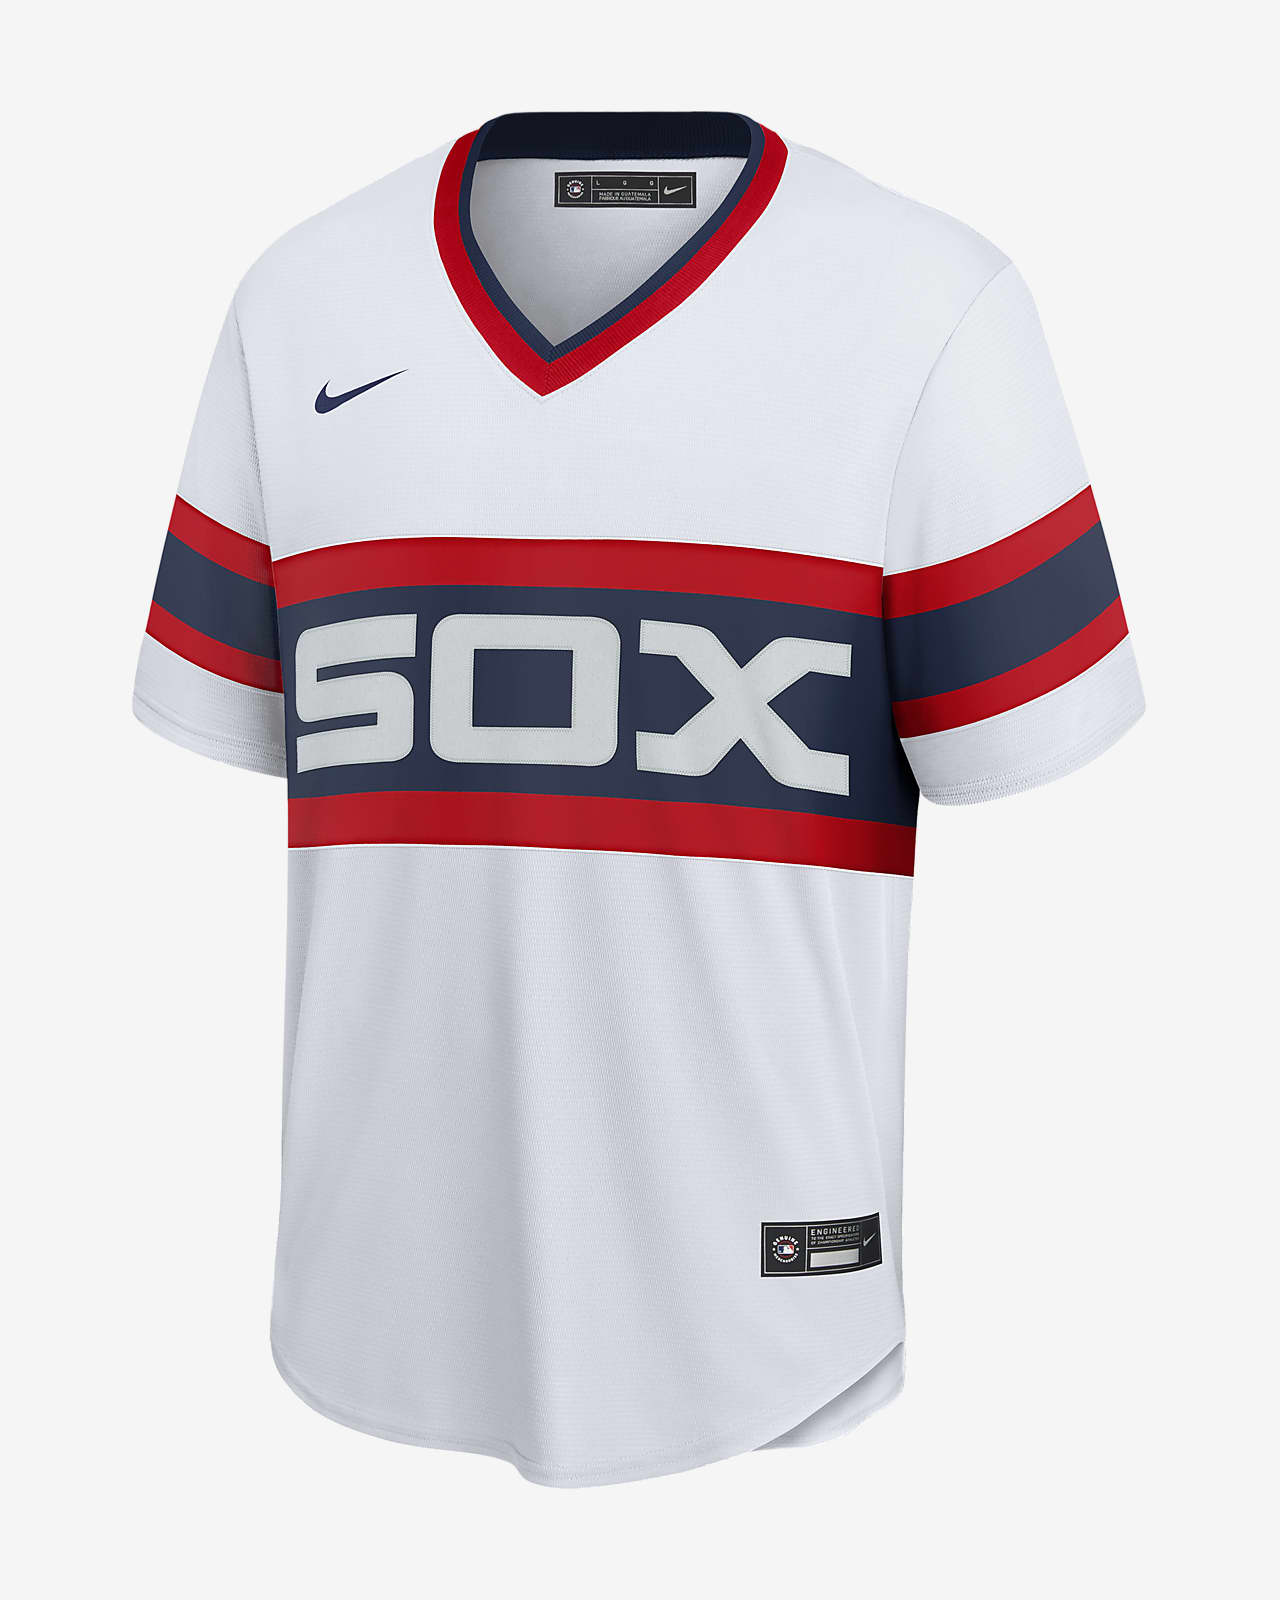 Los White Sox - ¡Nuestros uniformes retro! 🔥🔥🔥🔥 #LosWhiteSox